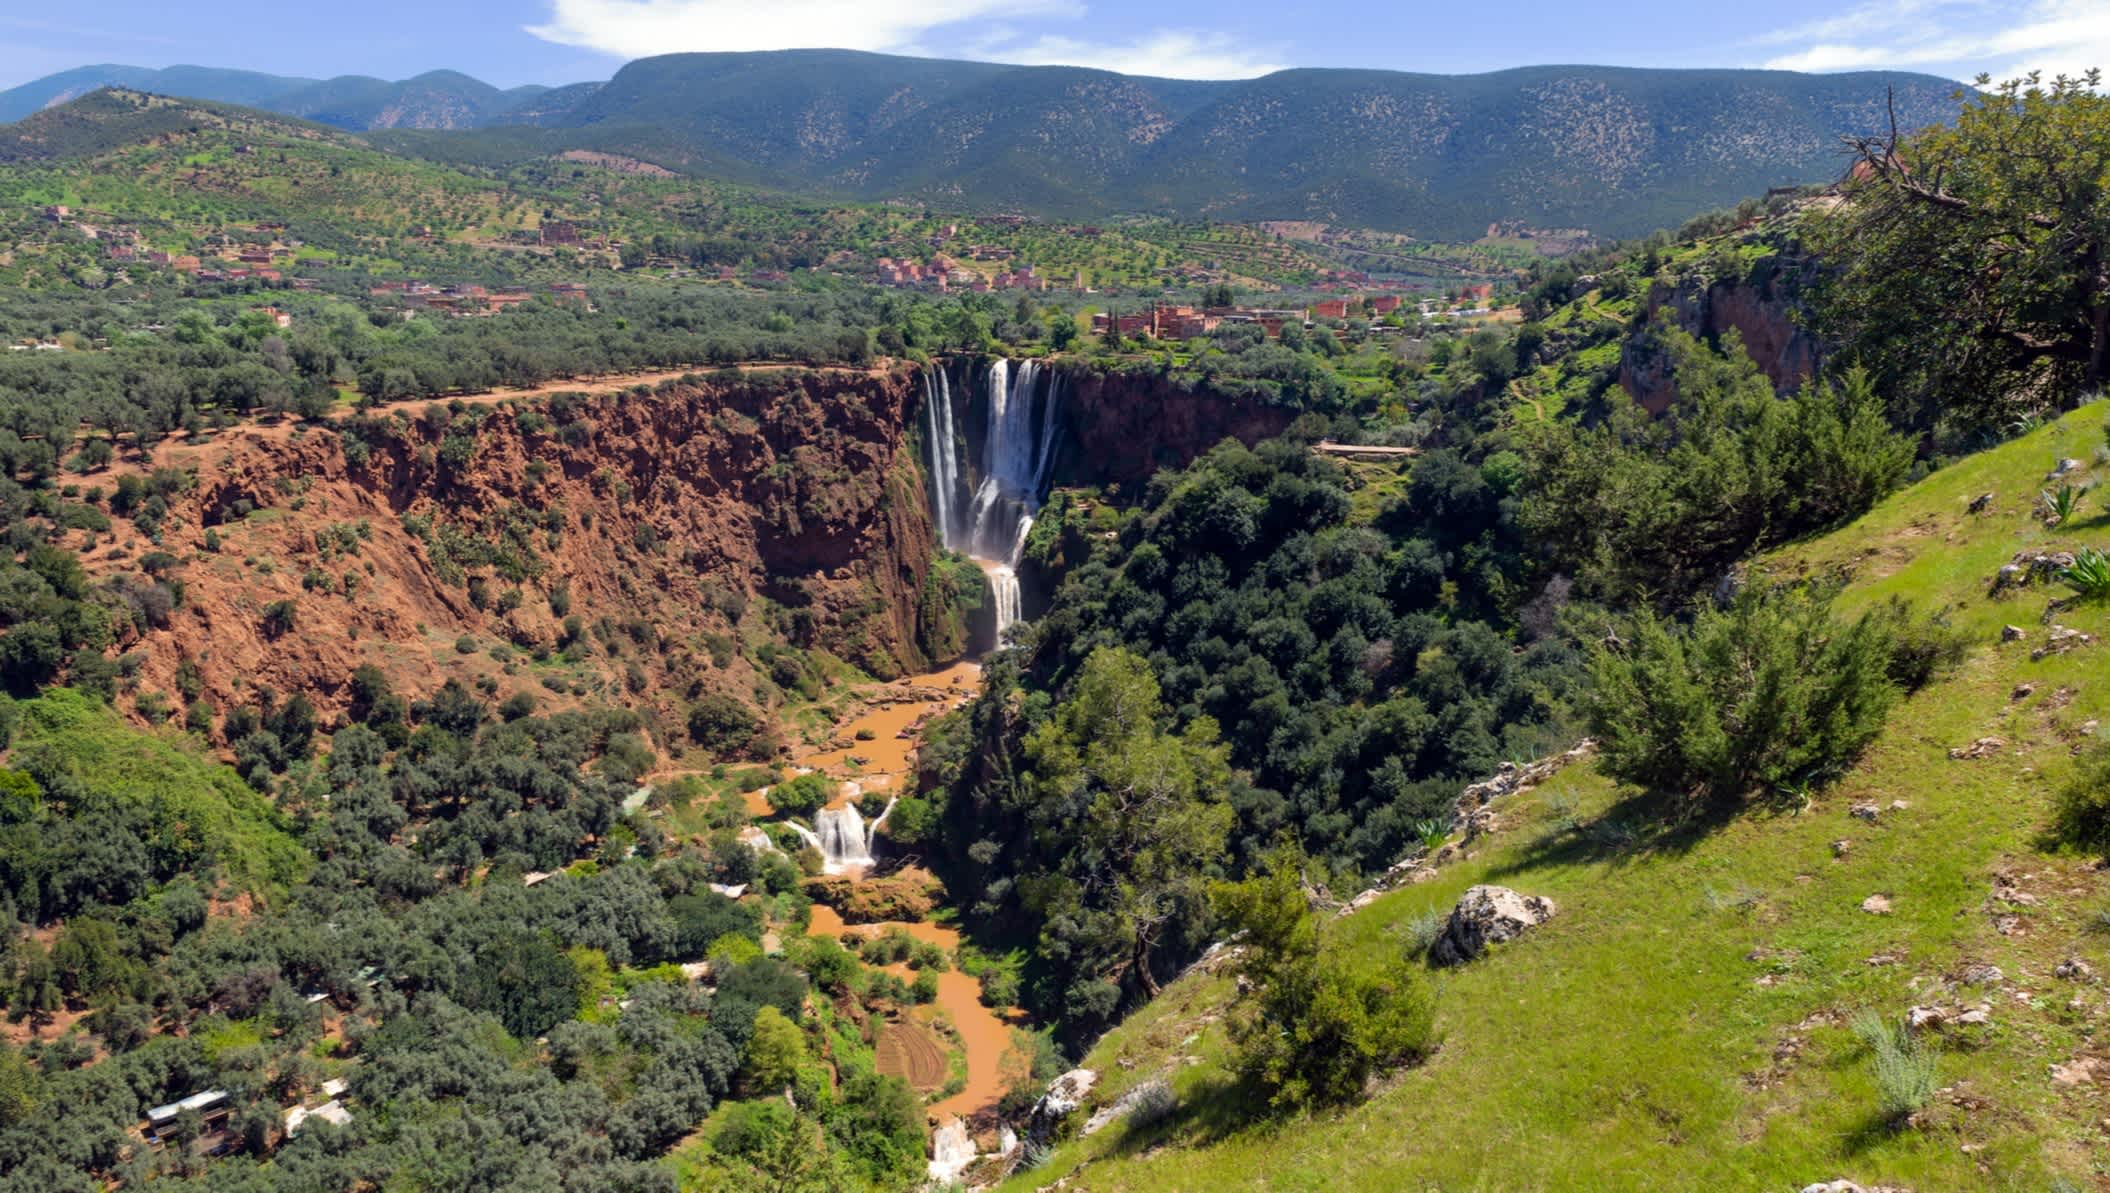 Chute d'eau dans la nature verdoyante, Maroc